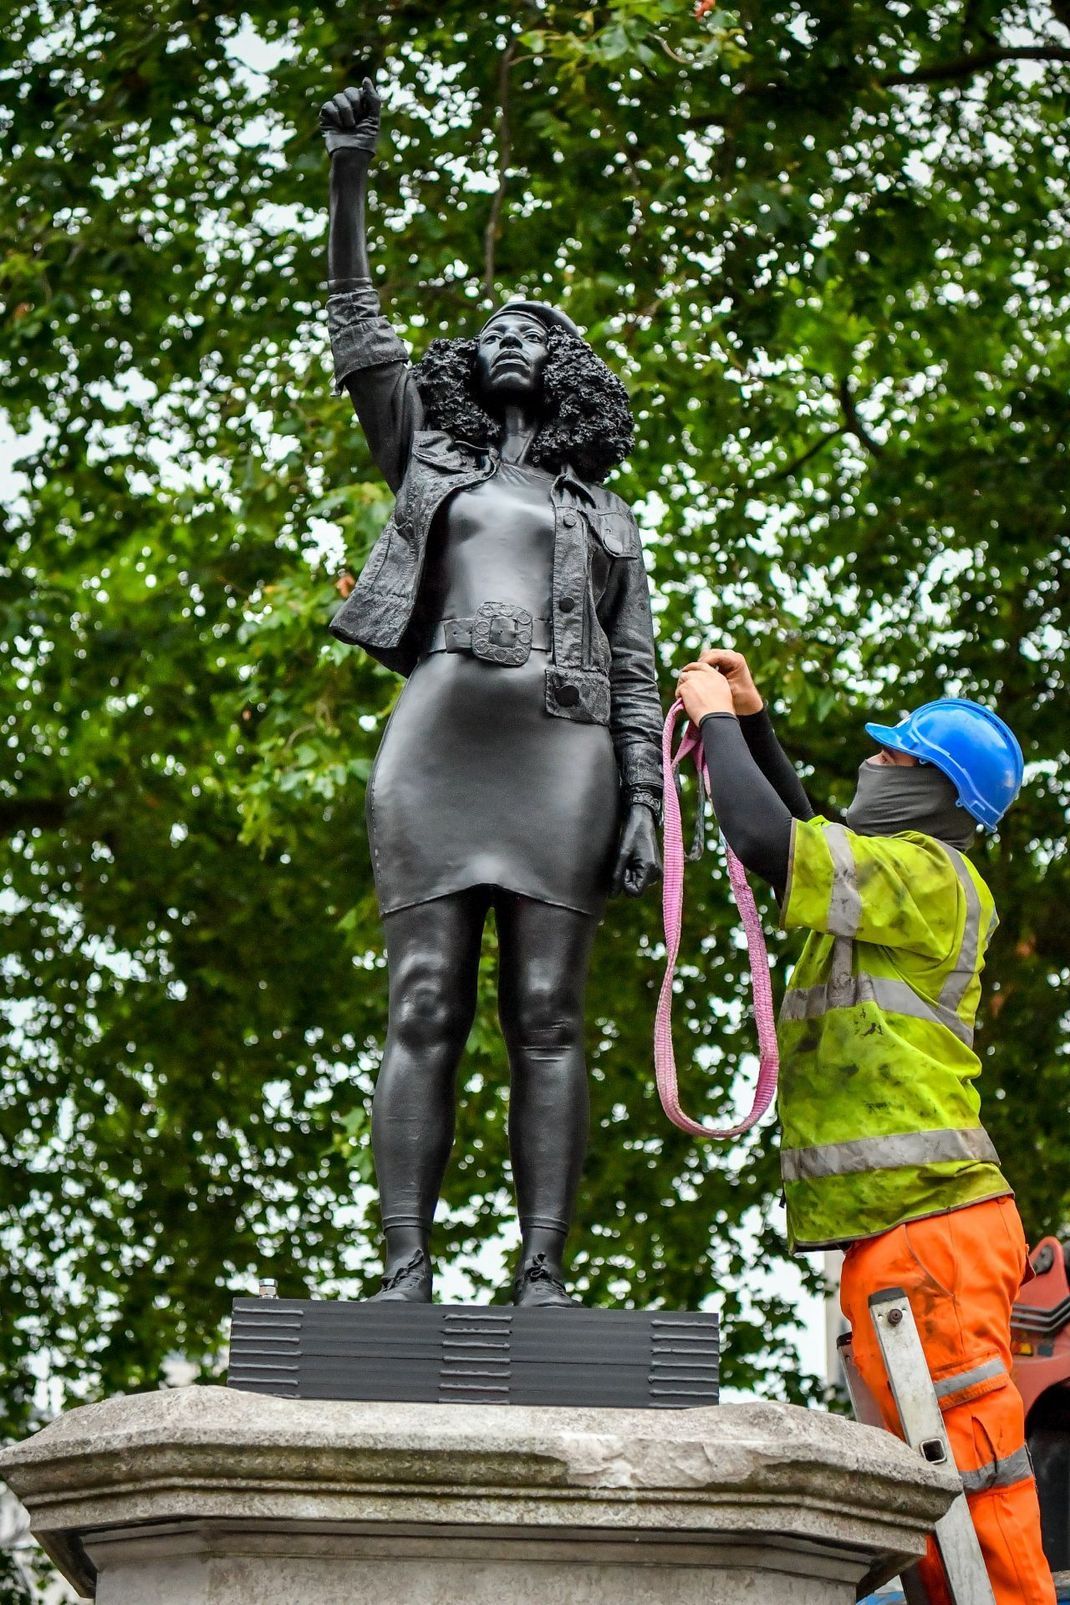 Bristol/Großbritannien: Bauarbeiter sichern die neue Statue des britischen Künstlers Marc Quinn mit Seilen, bevor sie wieder entfernt wird.